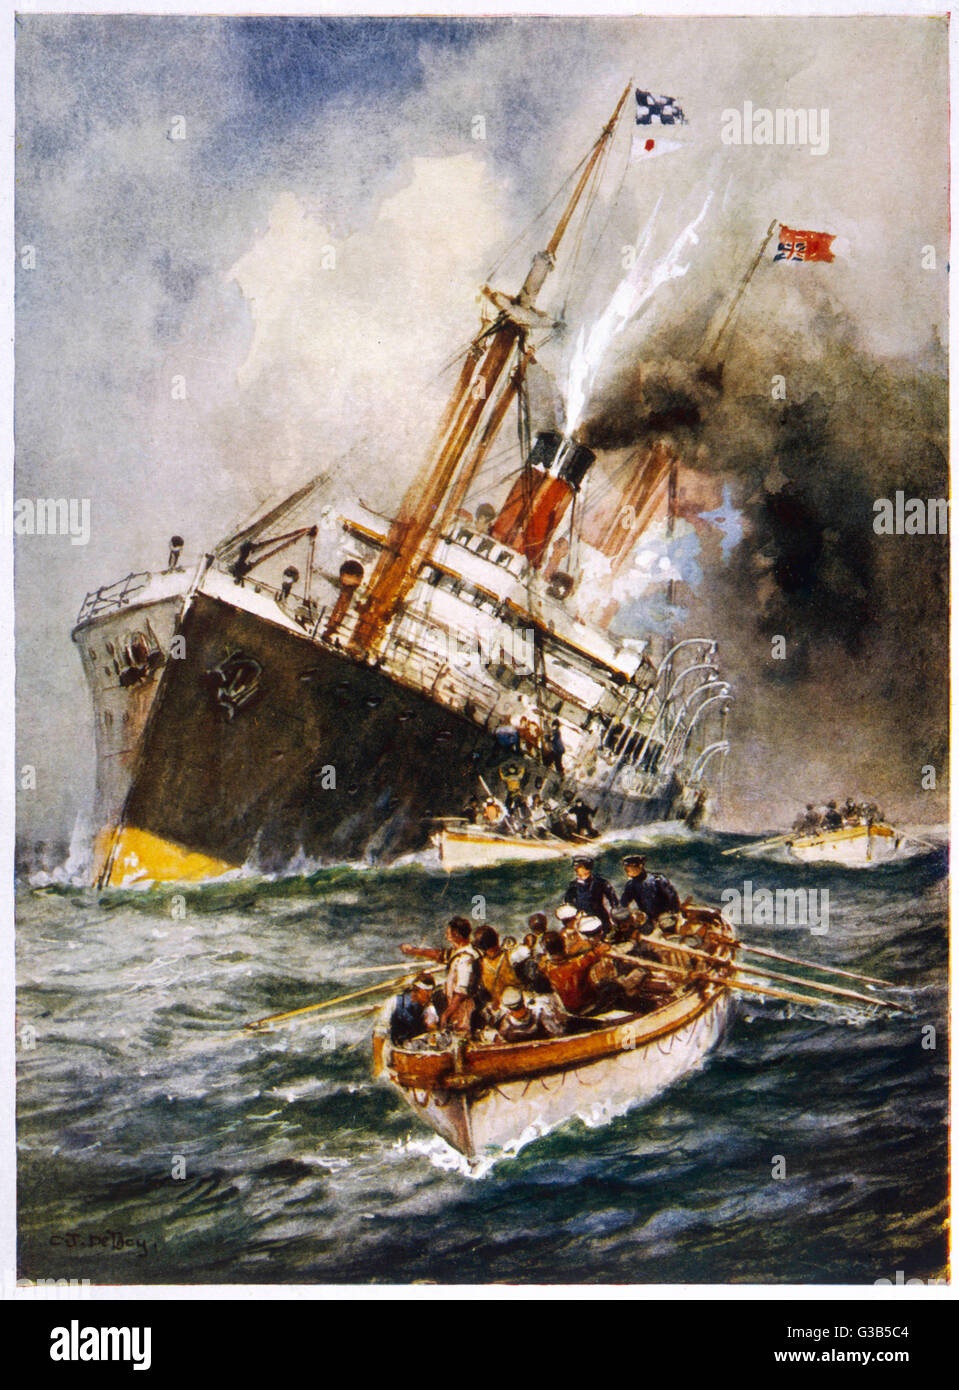 Abandonner le navire ! L'équipage d'un navire britannique torpillé prendre pour les bateaux comme leur bateau plus de quilles Date : 1914-1918 Banque D'Images